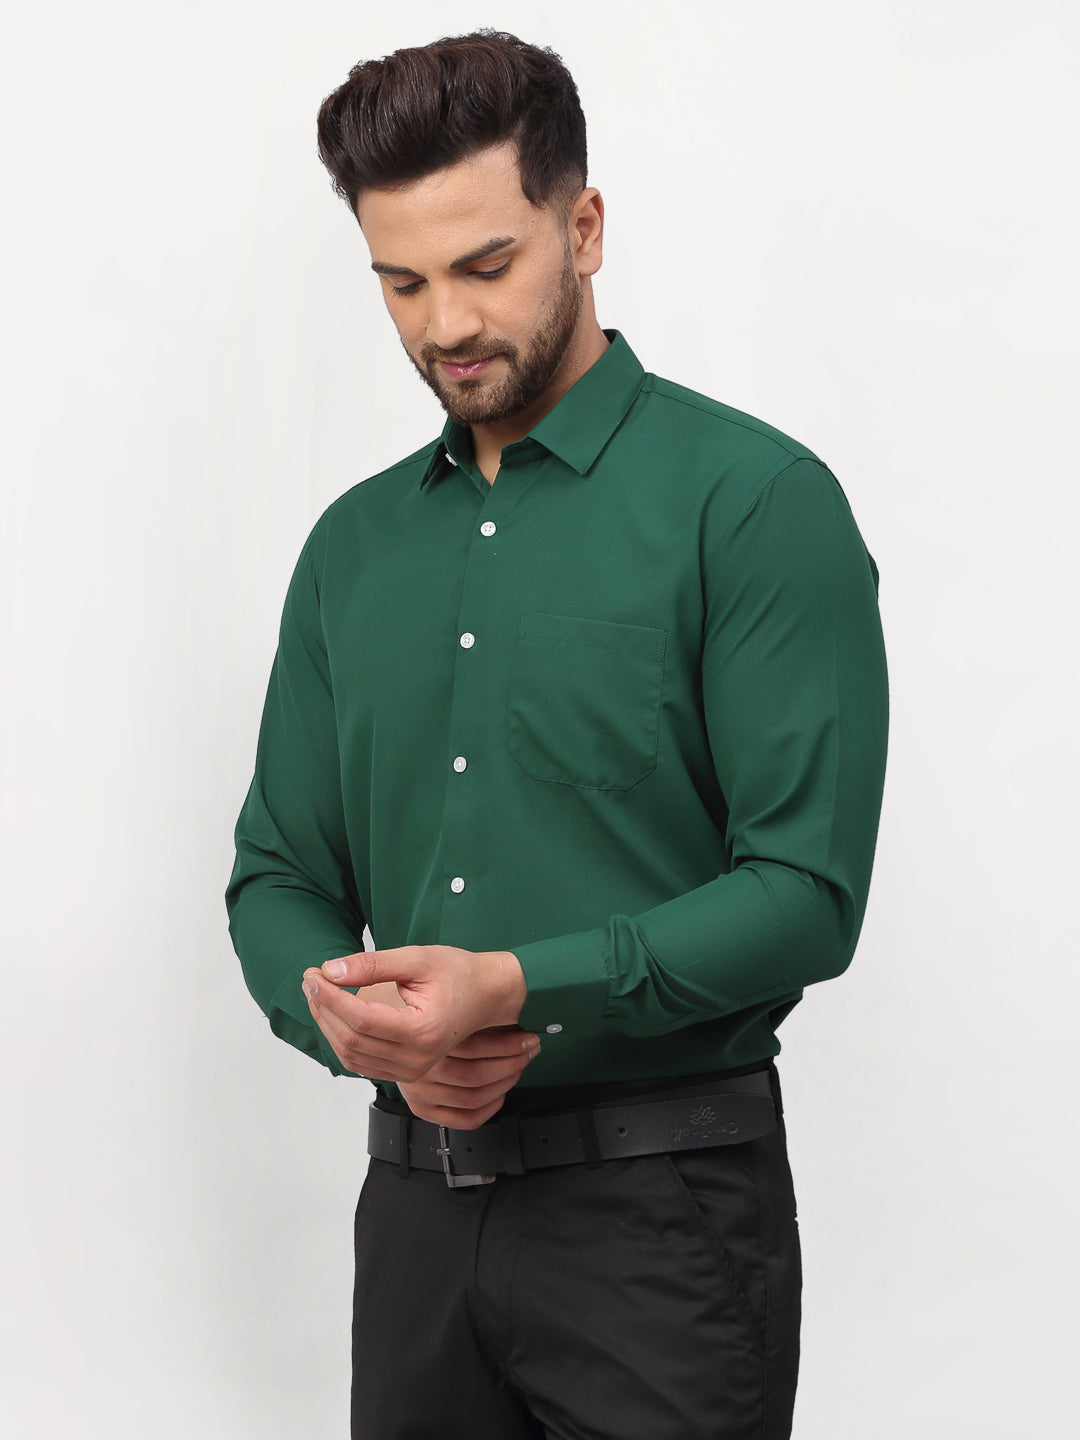 Men's Olive Solid Formal Shirts ( SF 777Olive ) - Jainish